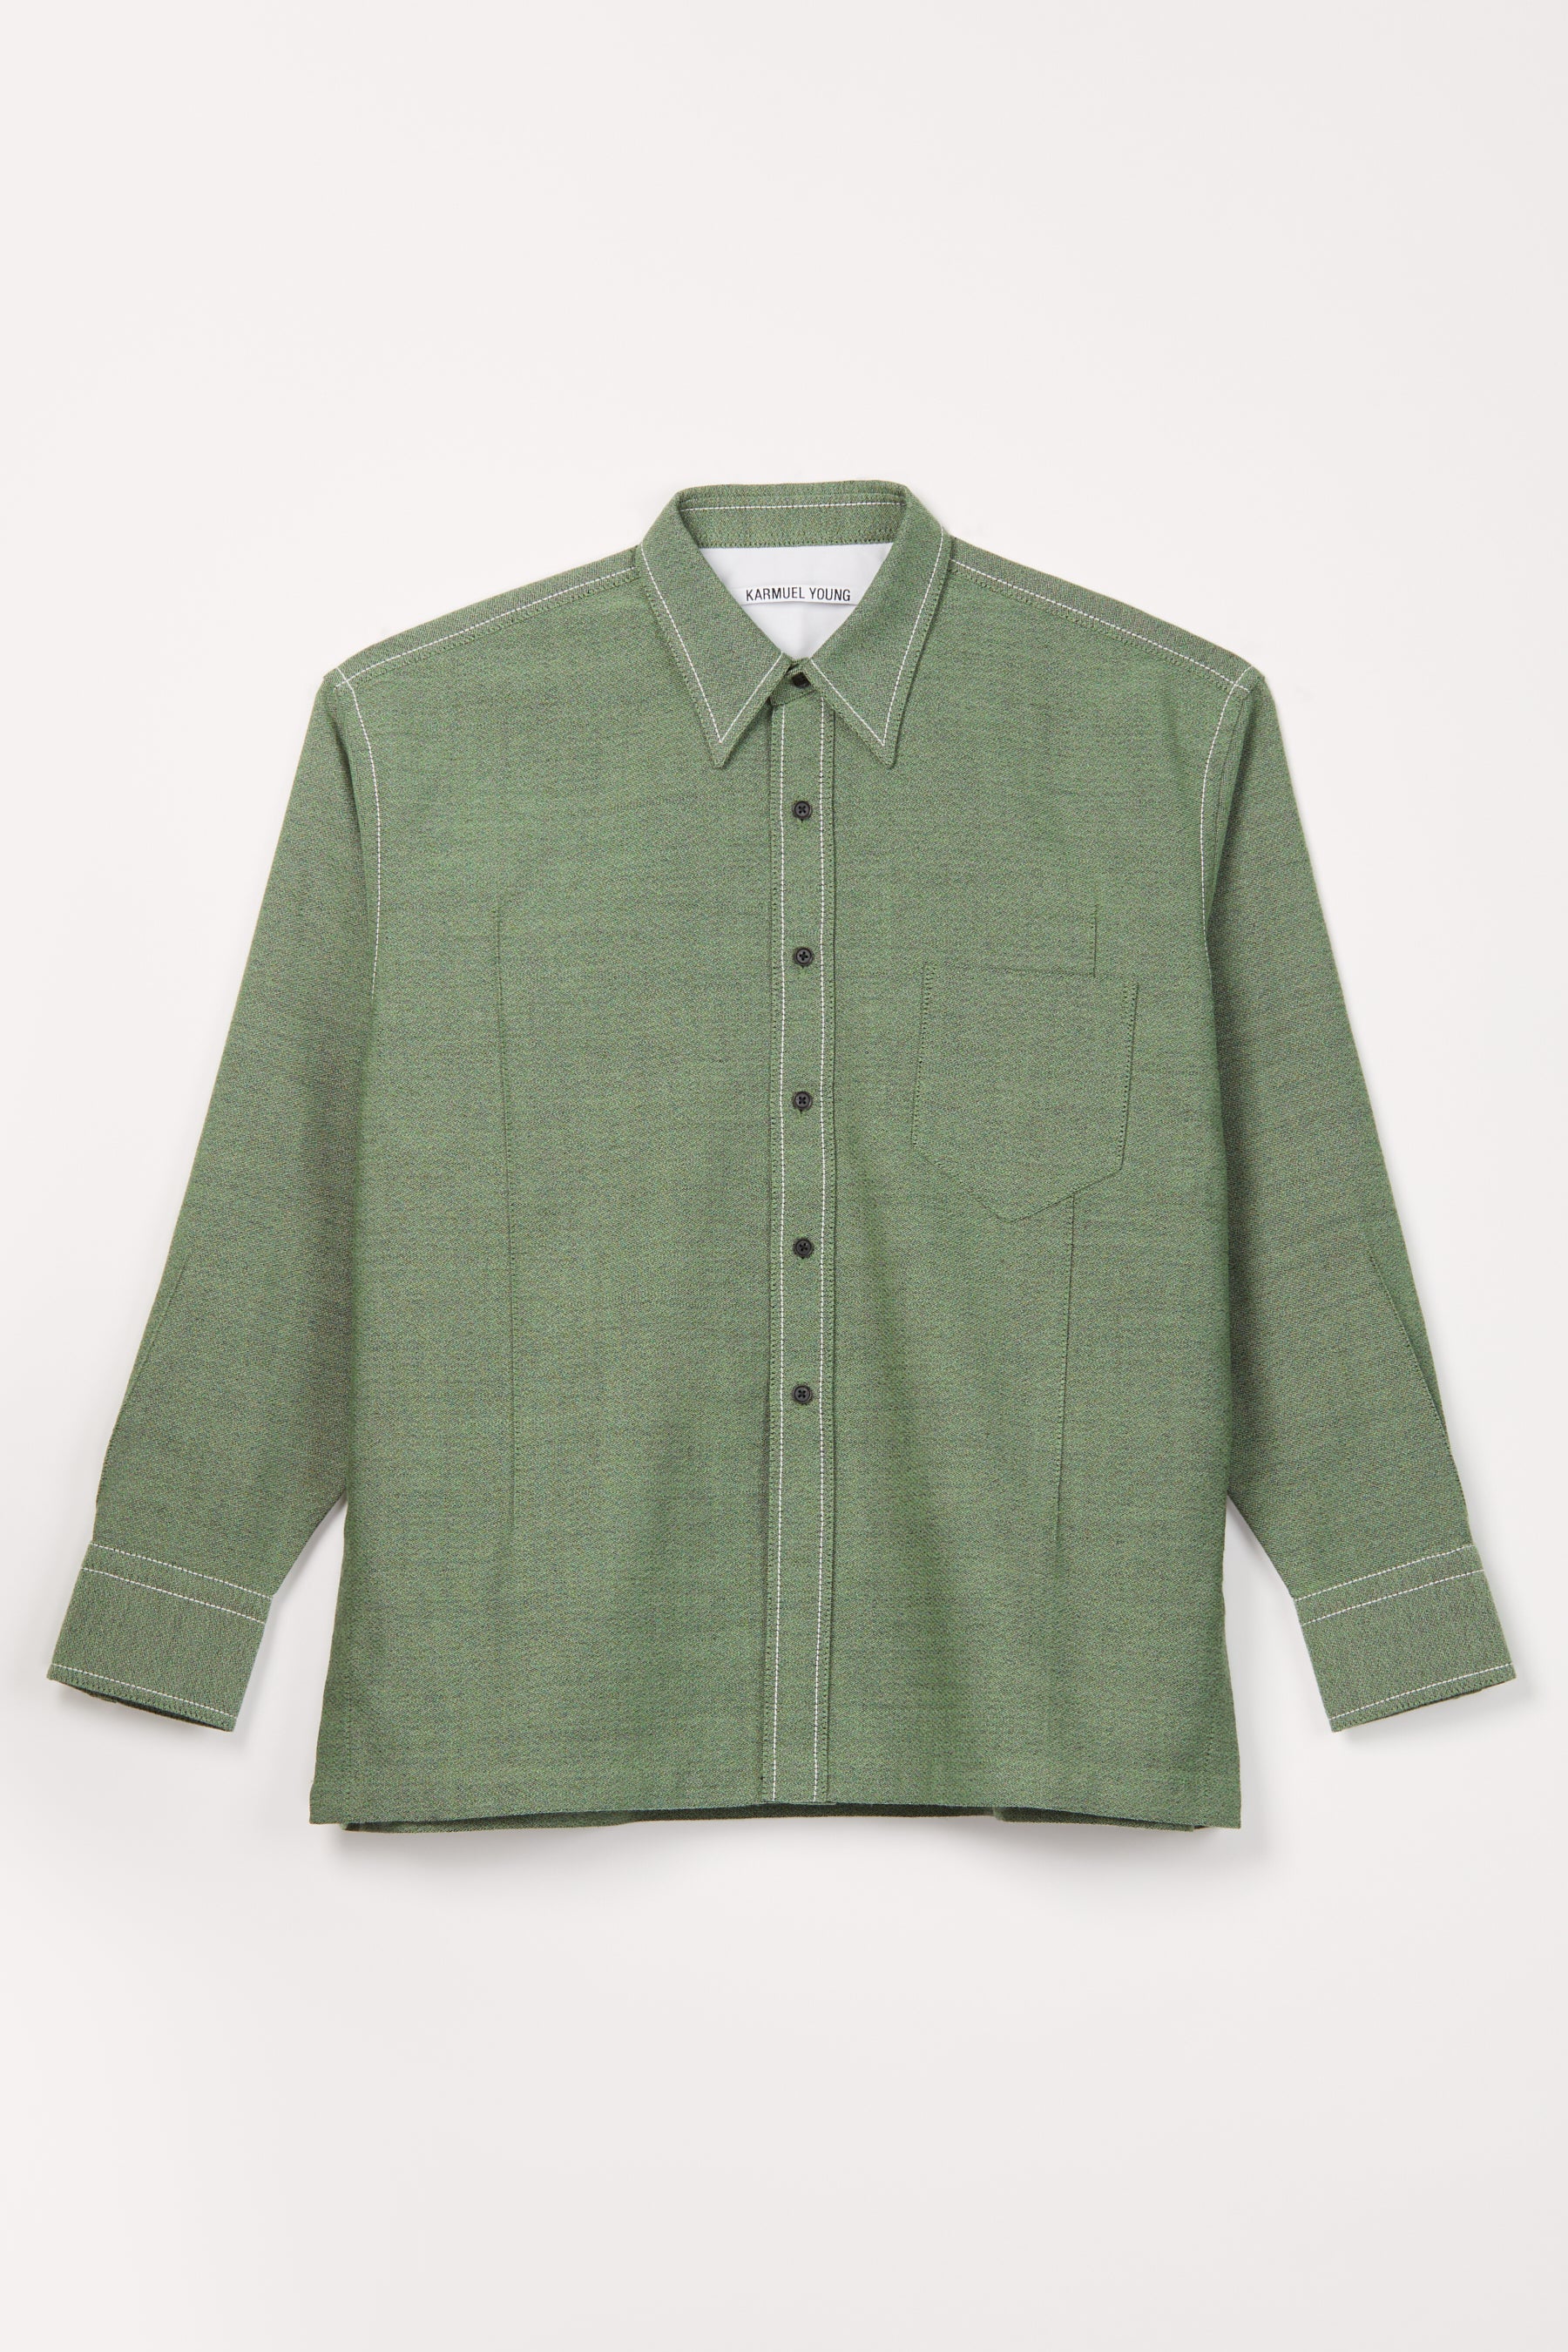 Green Woollen Cuboid Overshirt